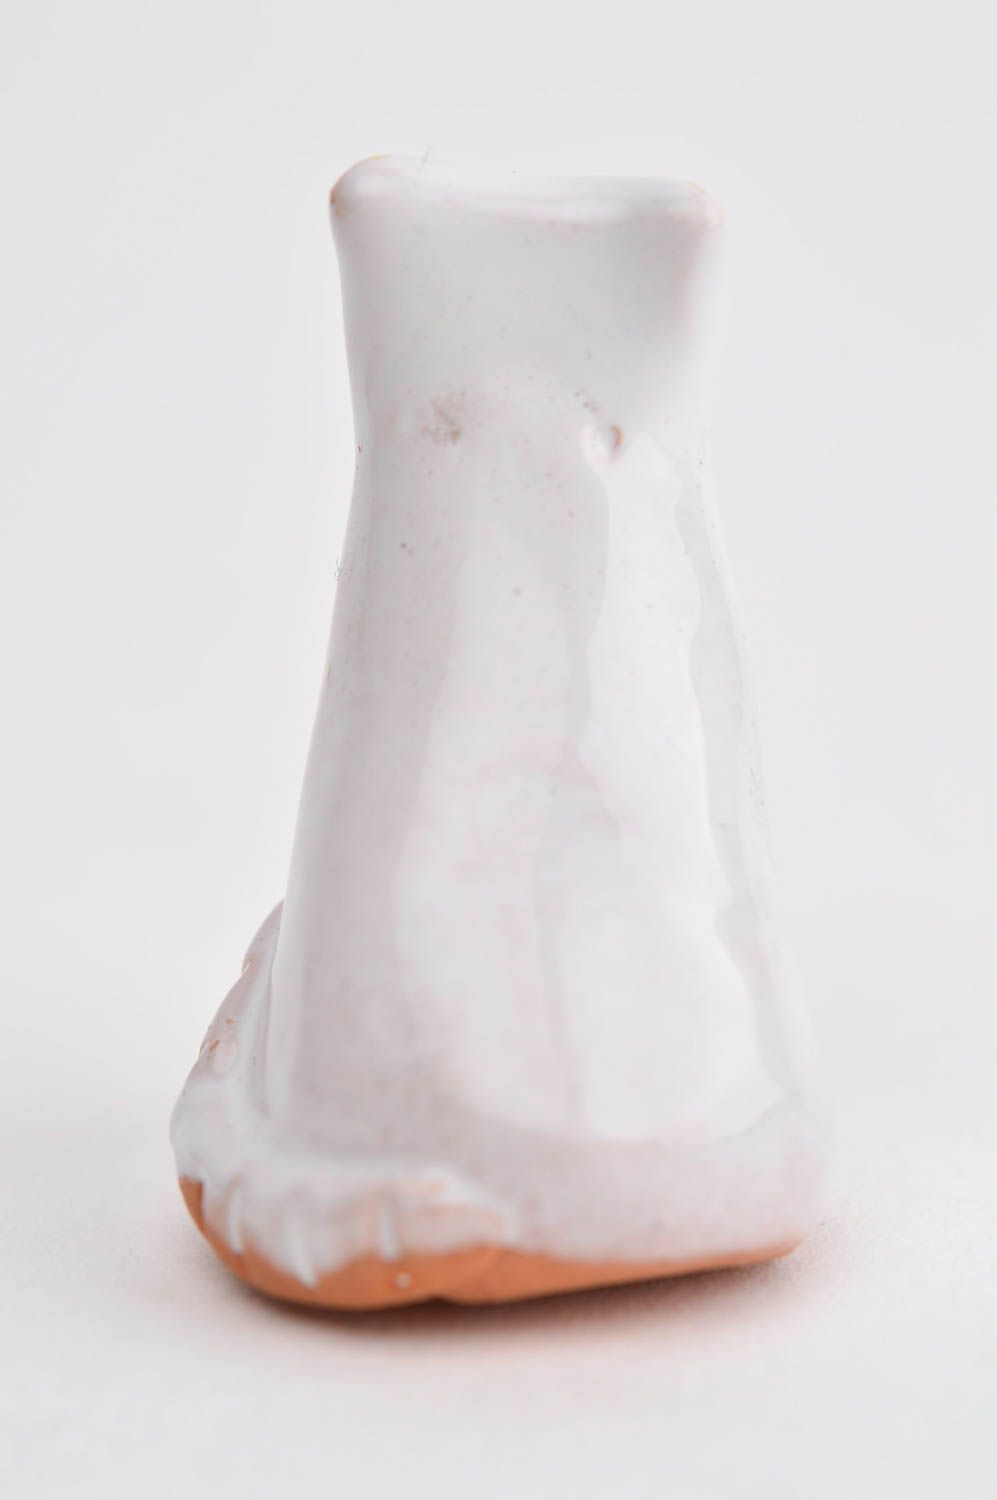 Figura decorativa con forma de gata blanca elemento decorativo regalo origina foto 10